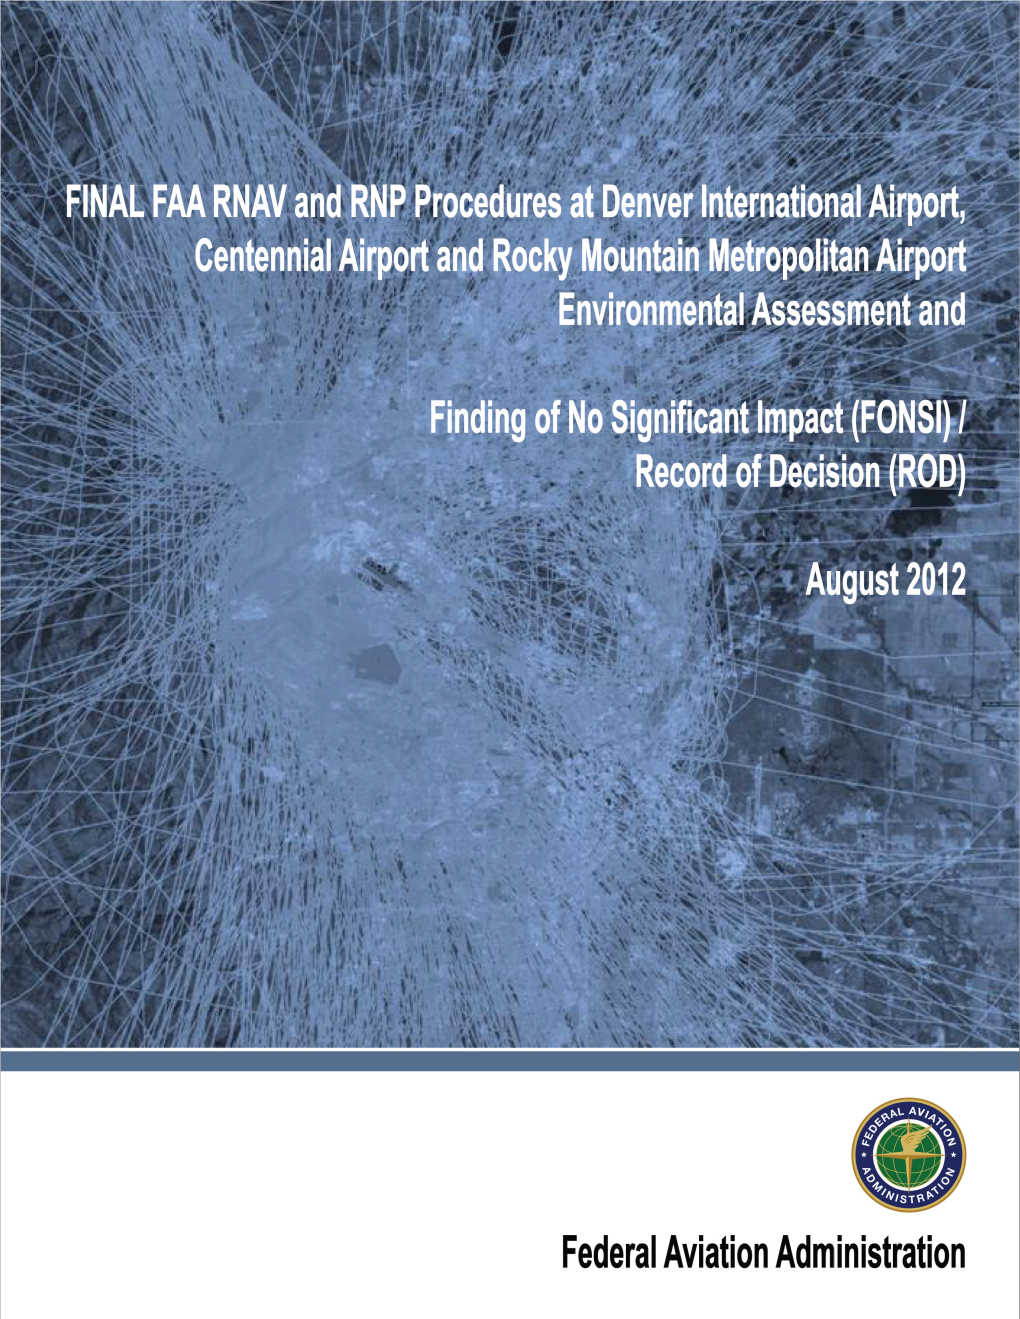 Final FAA RNAV and RNP Procedures at Denver International Airport